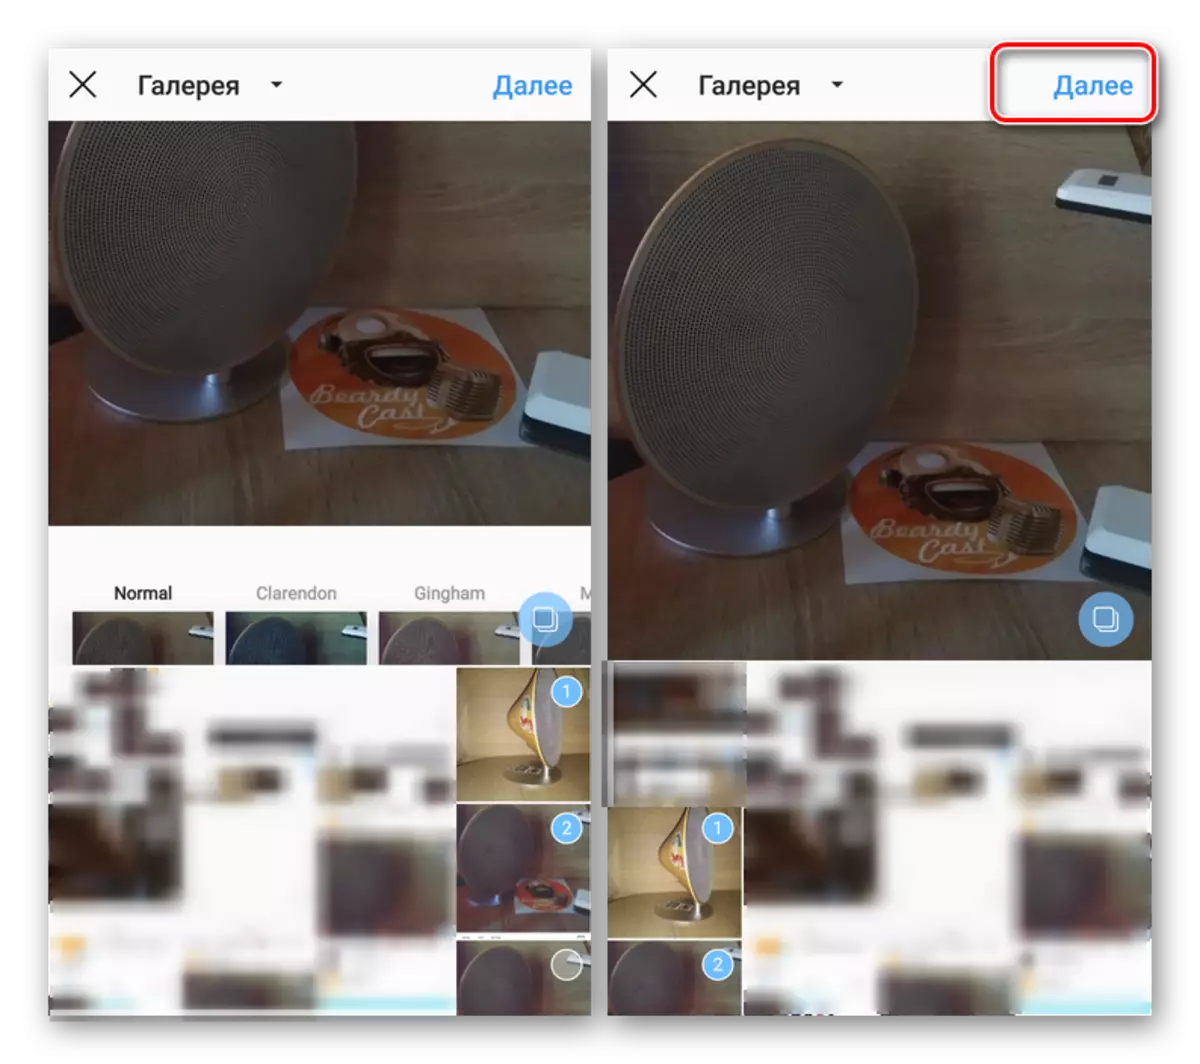 Kontrolearje de karousel en de oergong nei syn publikaasje yn 'e Instagram-applikaasje foar Android